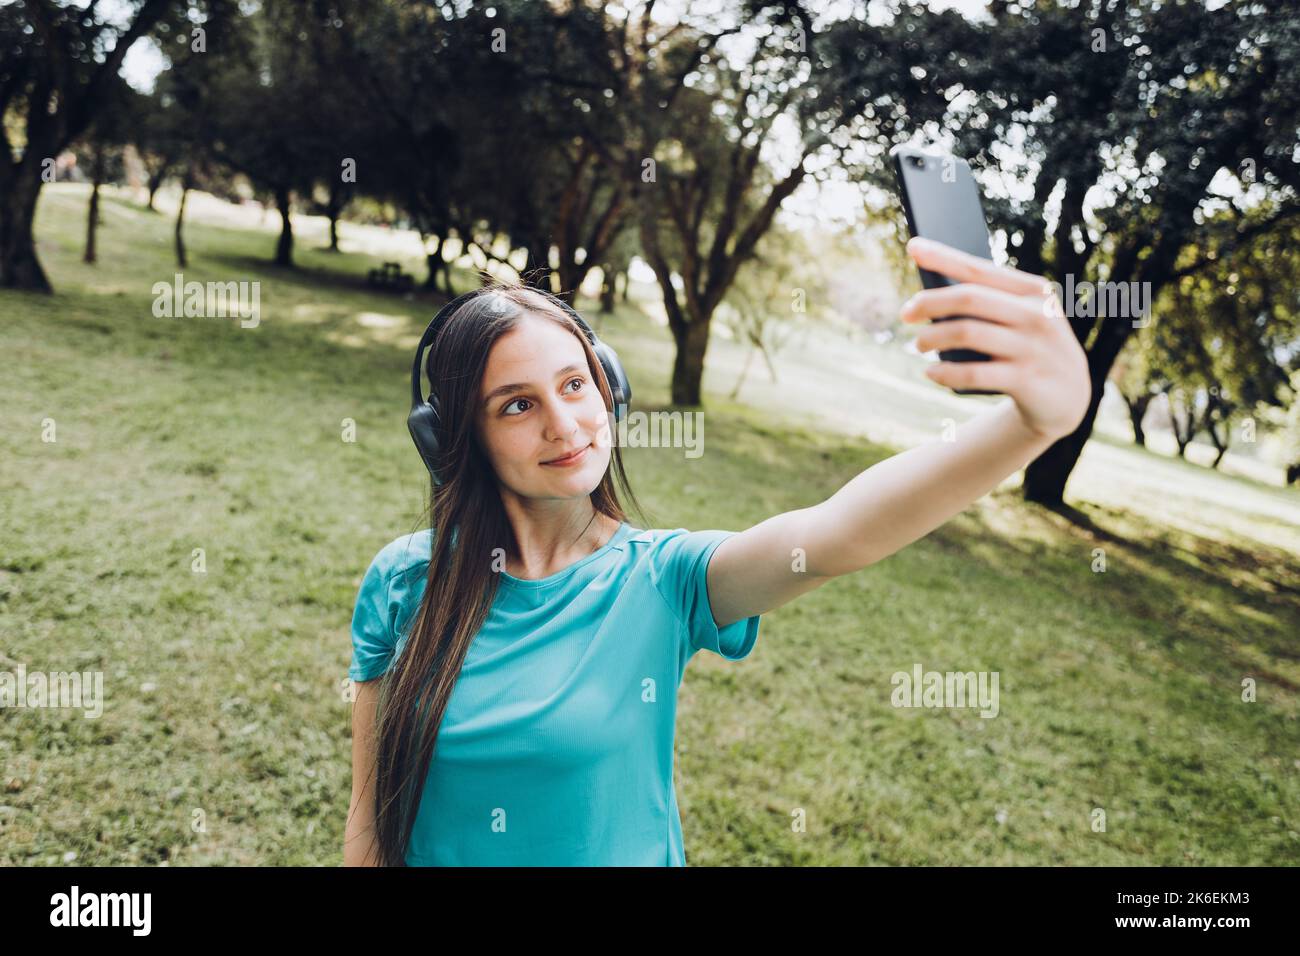 Adolescente souriante portant un t-shirt turquoise et un casque, emportant un selfie avec son mobile dans un espace naturel Banque D'Images